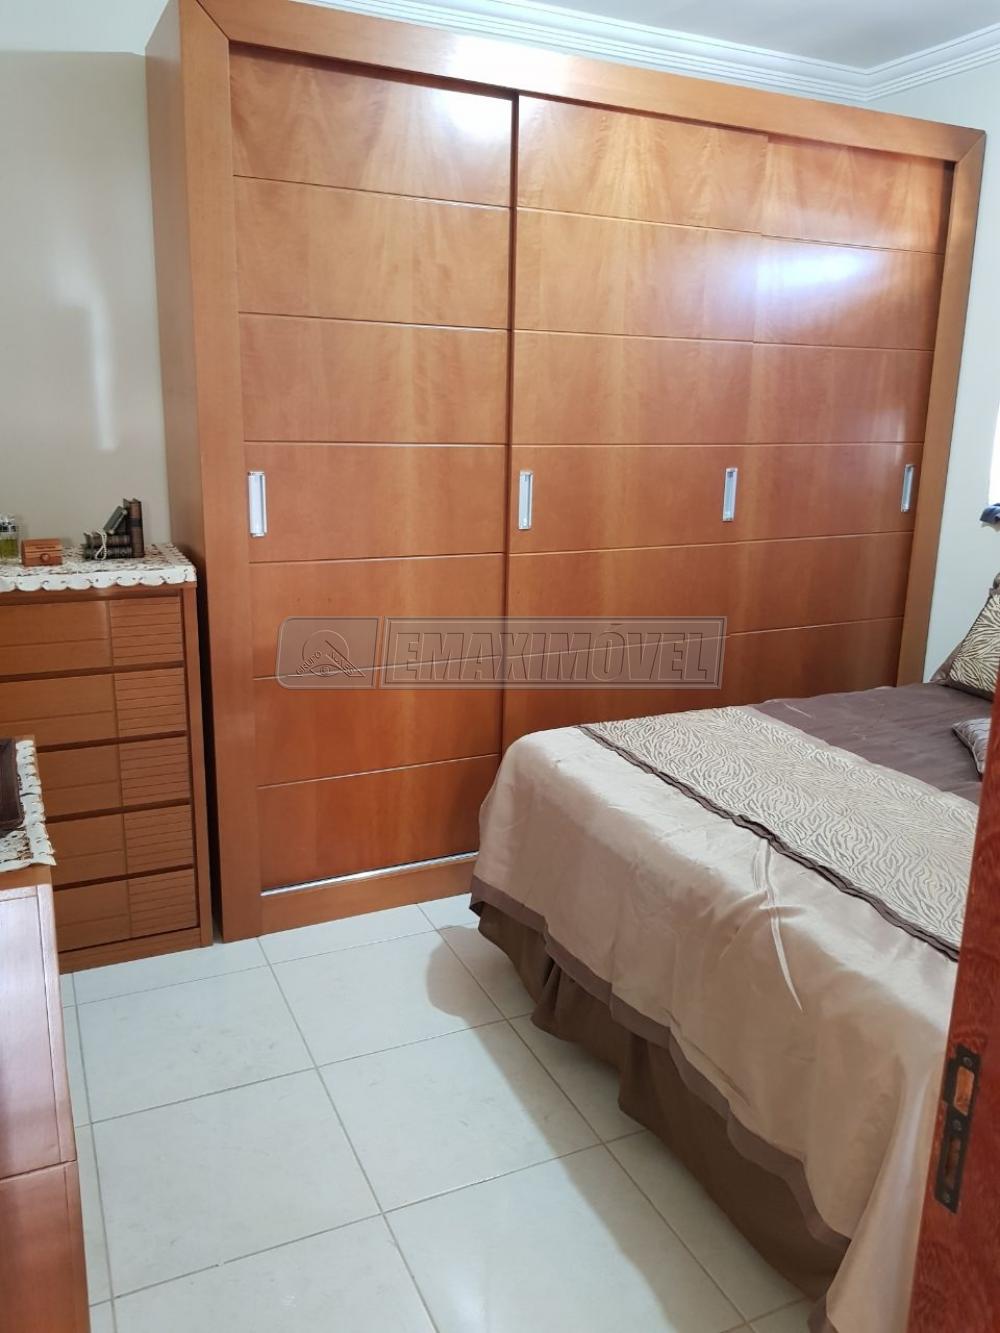 Alugar Apartamento / Padrão em Sorocaba R$ 1.300,00 - Foto 7